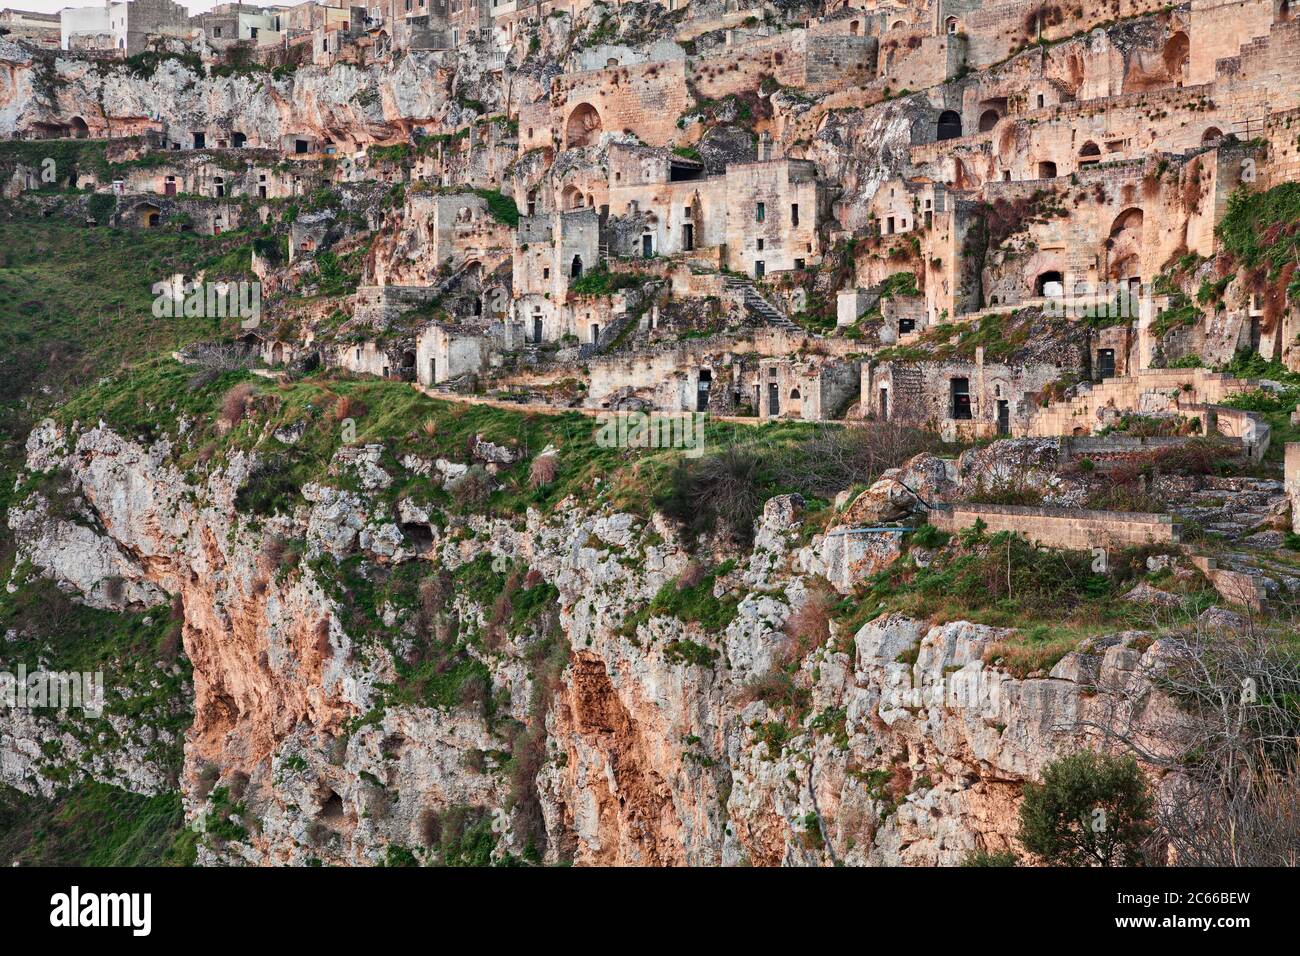 Matera, Basilicata, Italia: Paesaggio del centro storico chiamato Sassi con le antiche case scavate nella roccia tufacea sopra il burrone profondo Foto Stock